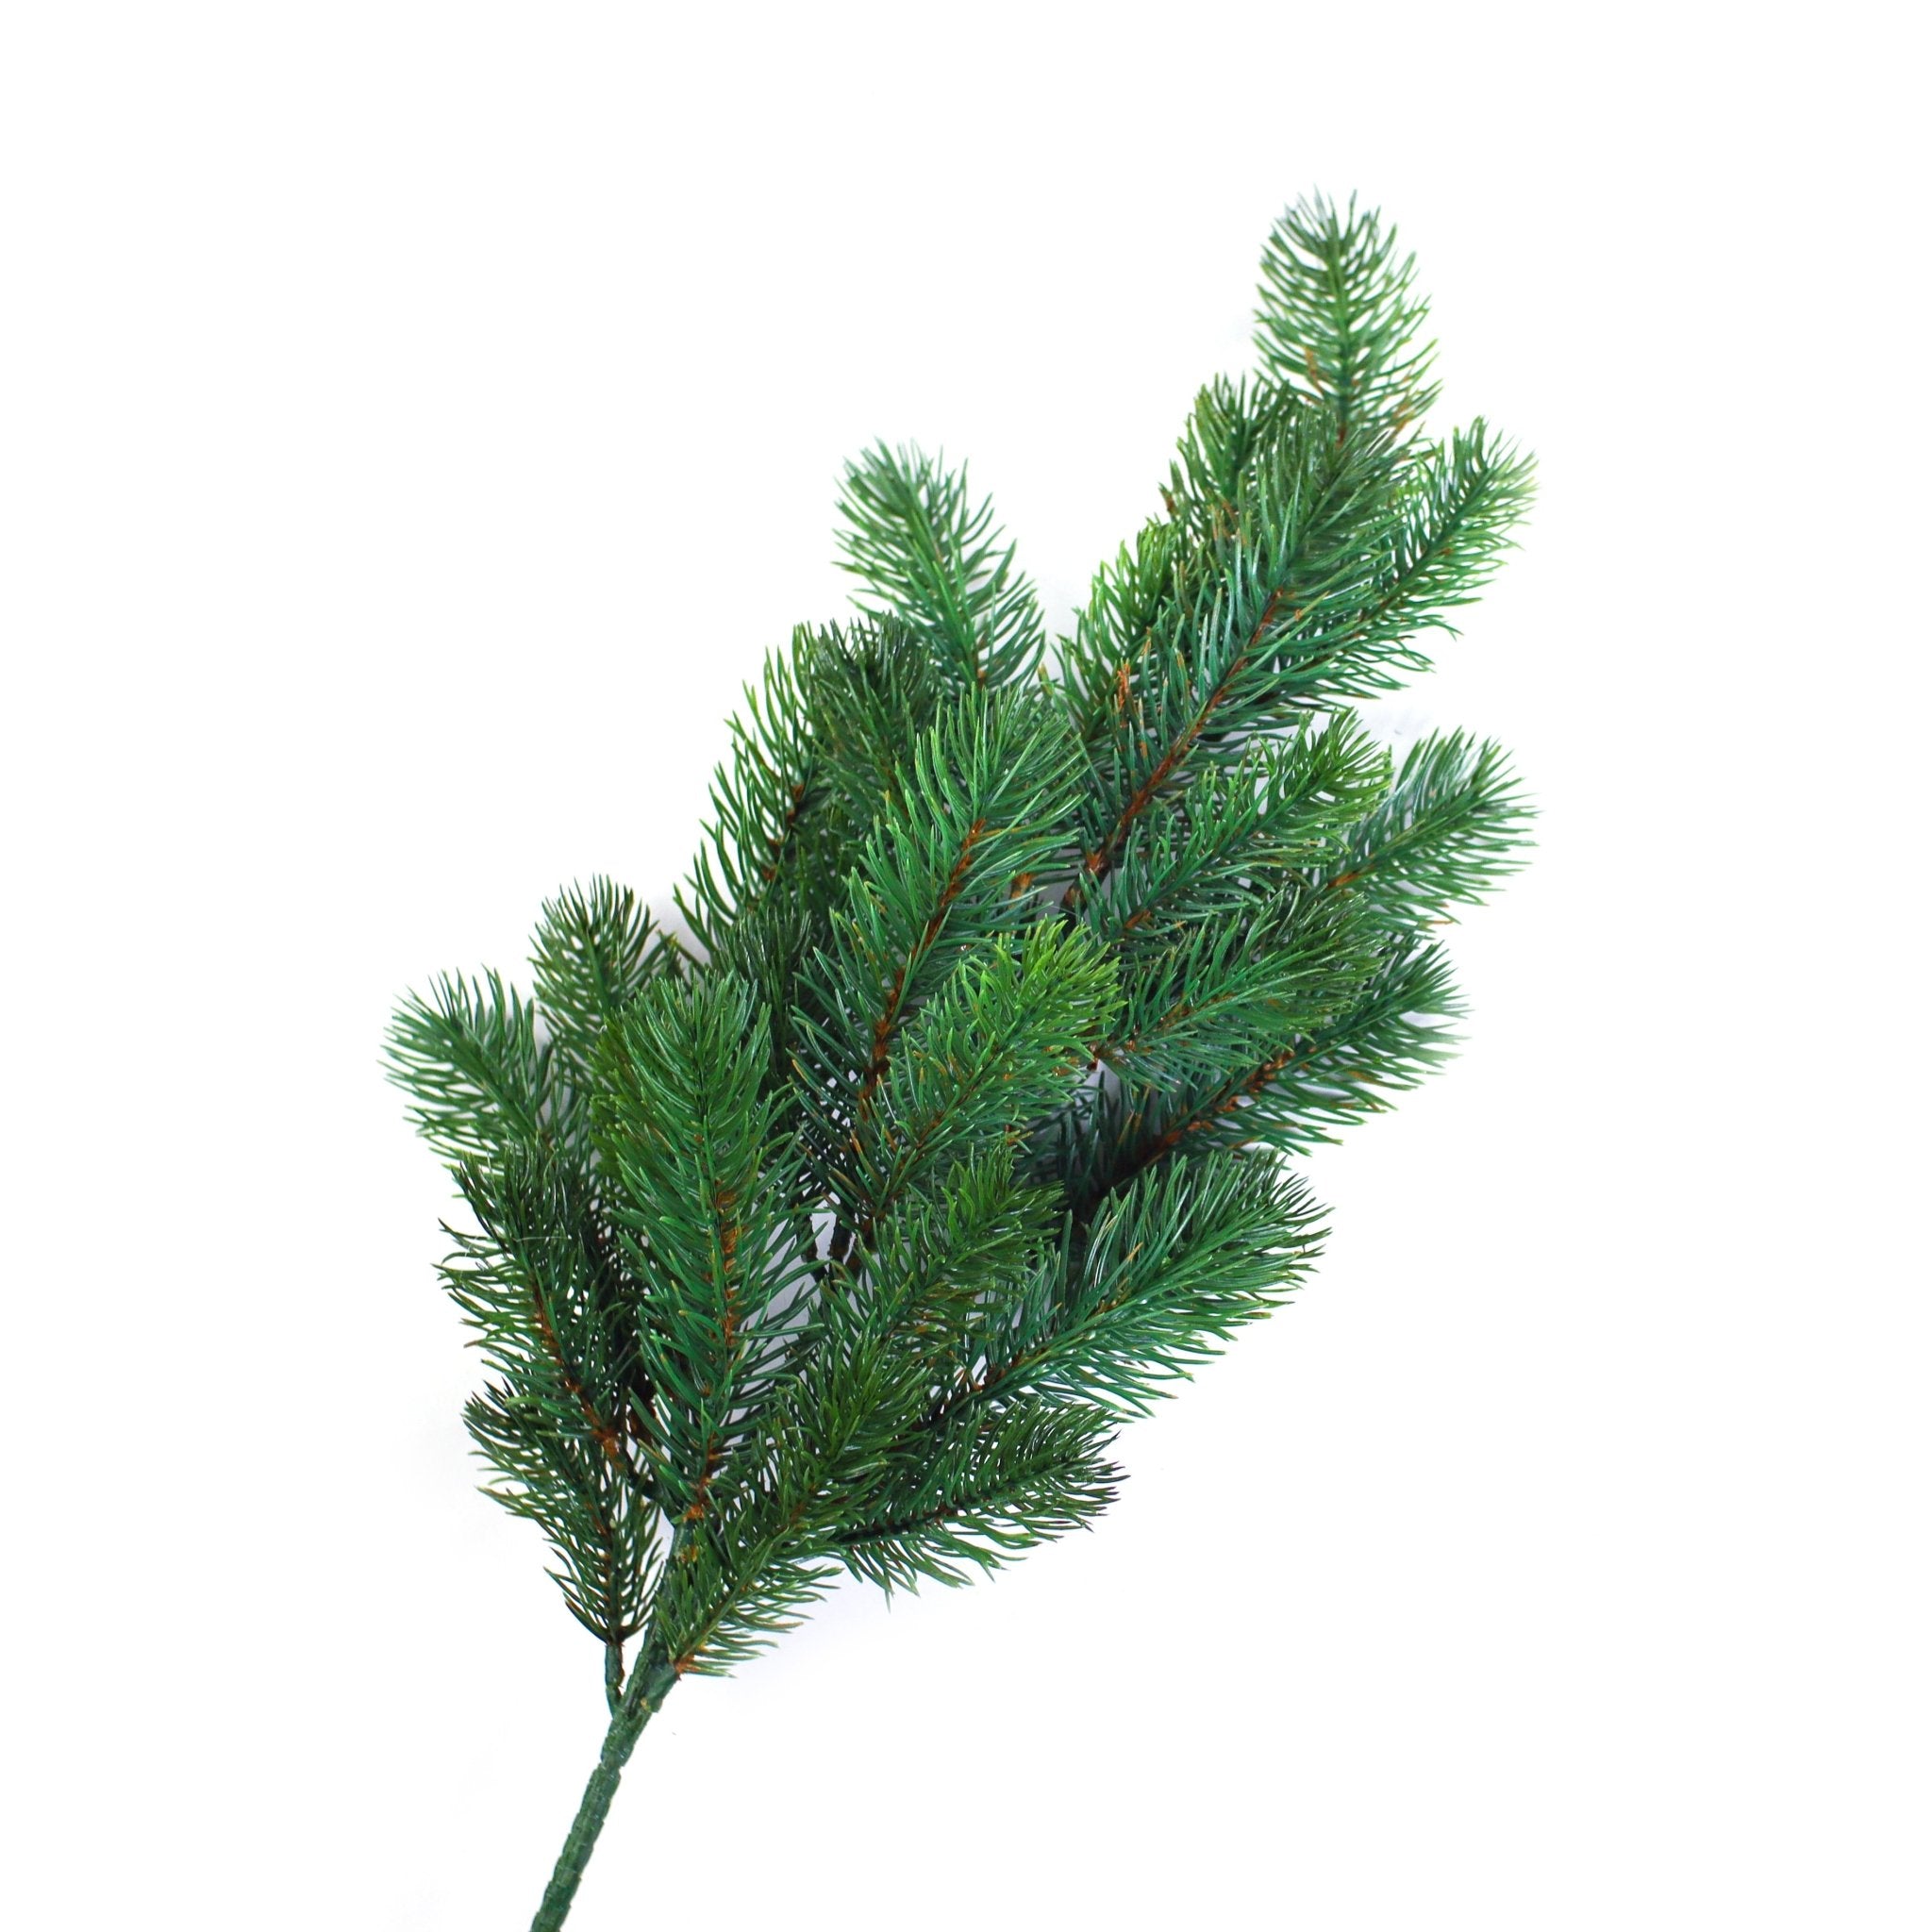 Faux Spruce Pine Branches 65cm 1pc - MODA FLORA Santa's Workshop